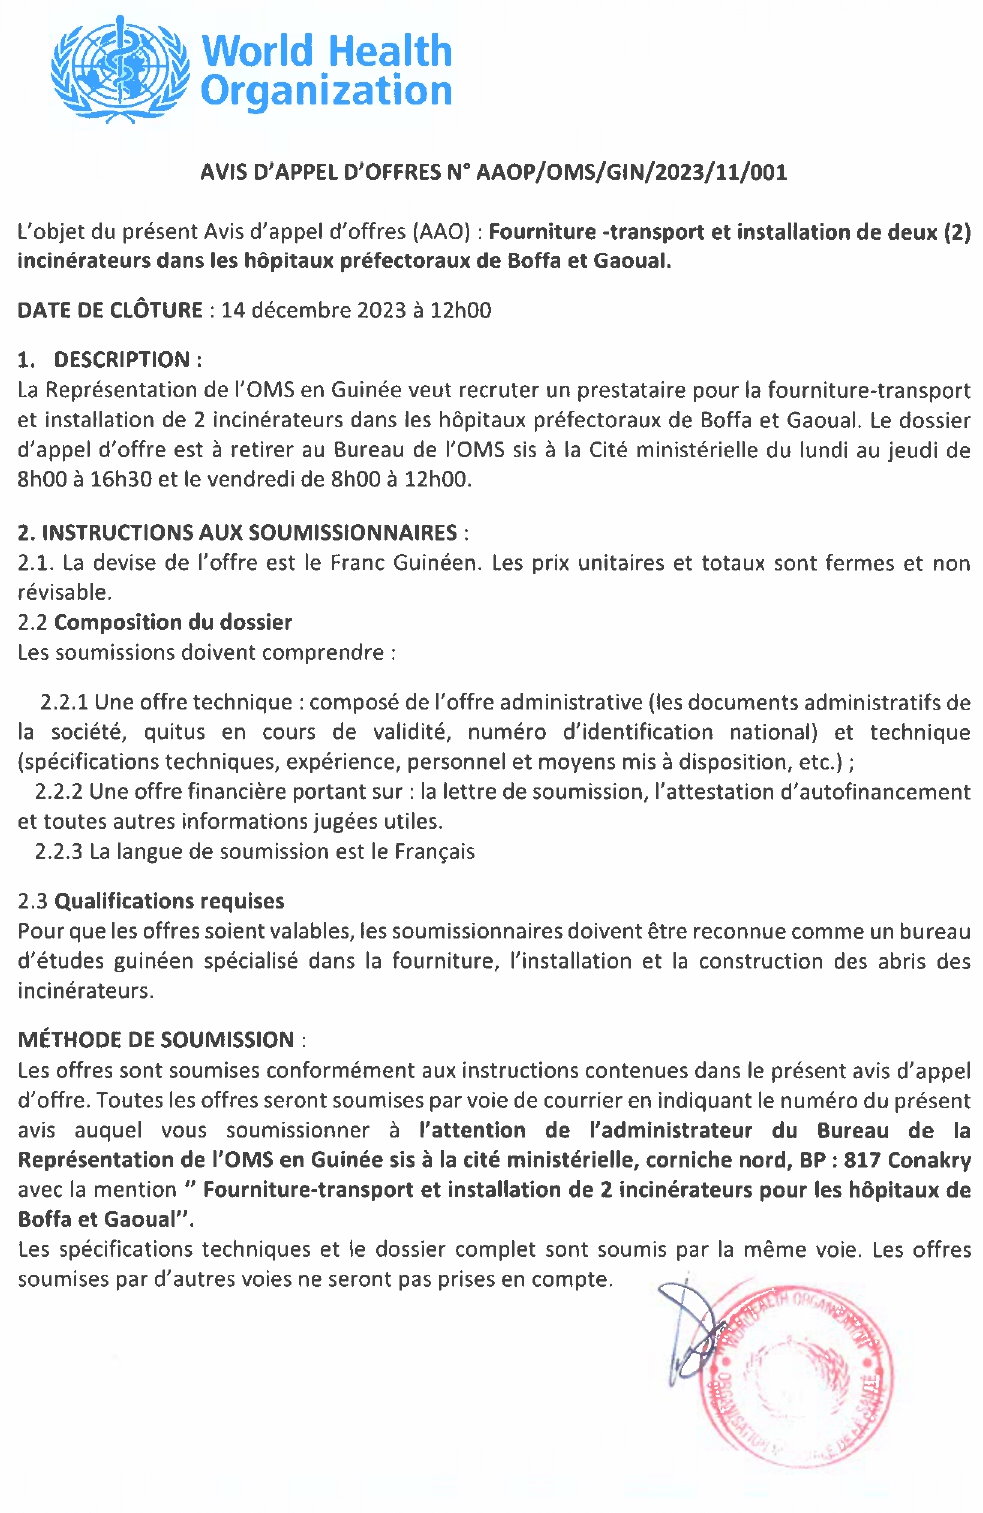 Avis d'Appel d'Offres pour la Fourniture -transport et installation de deux (2) incinérateurs dans les hôpitaux préfectoraux de Boffa et Gaoual